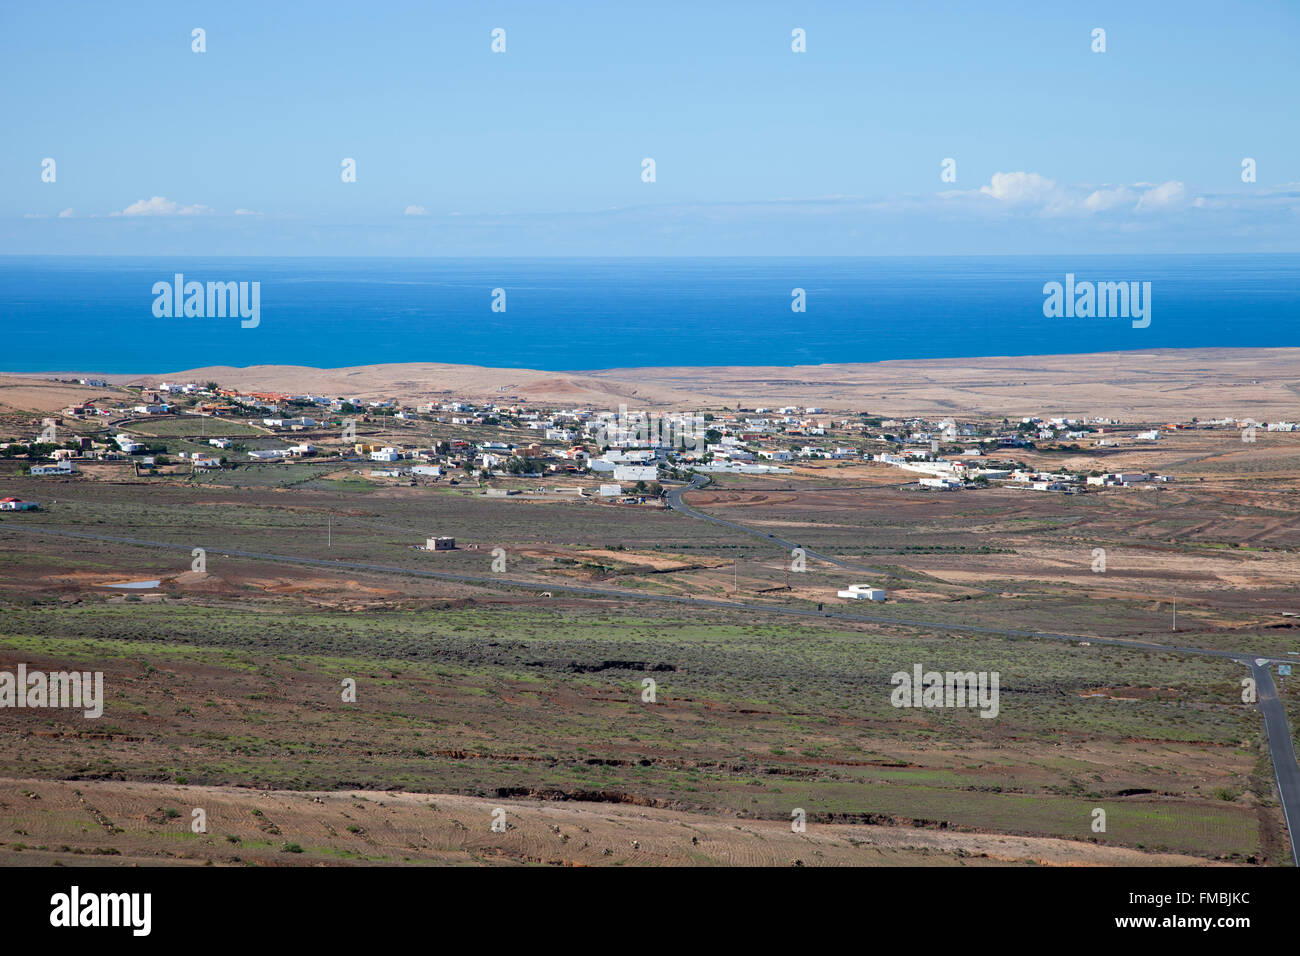 Villaggio Tindaya, isola di Fuerteventura, arcipelago delle Canarie, Spagna, Europa Foto Stock